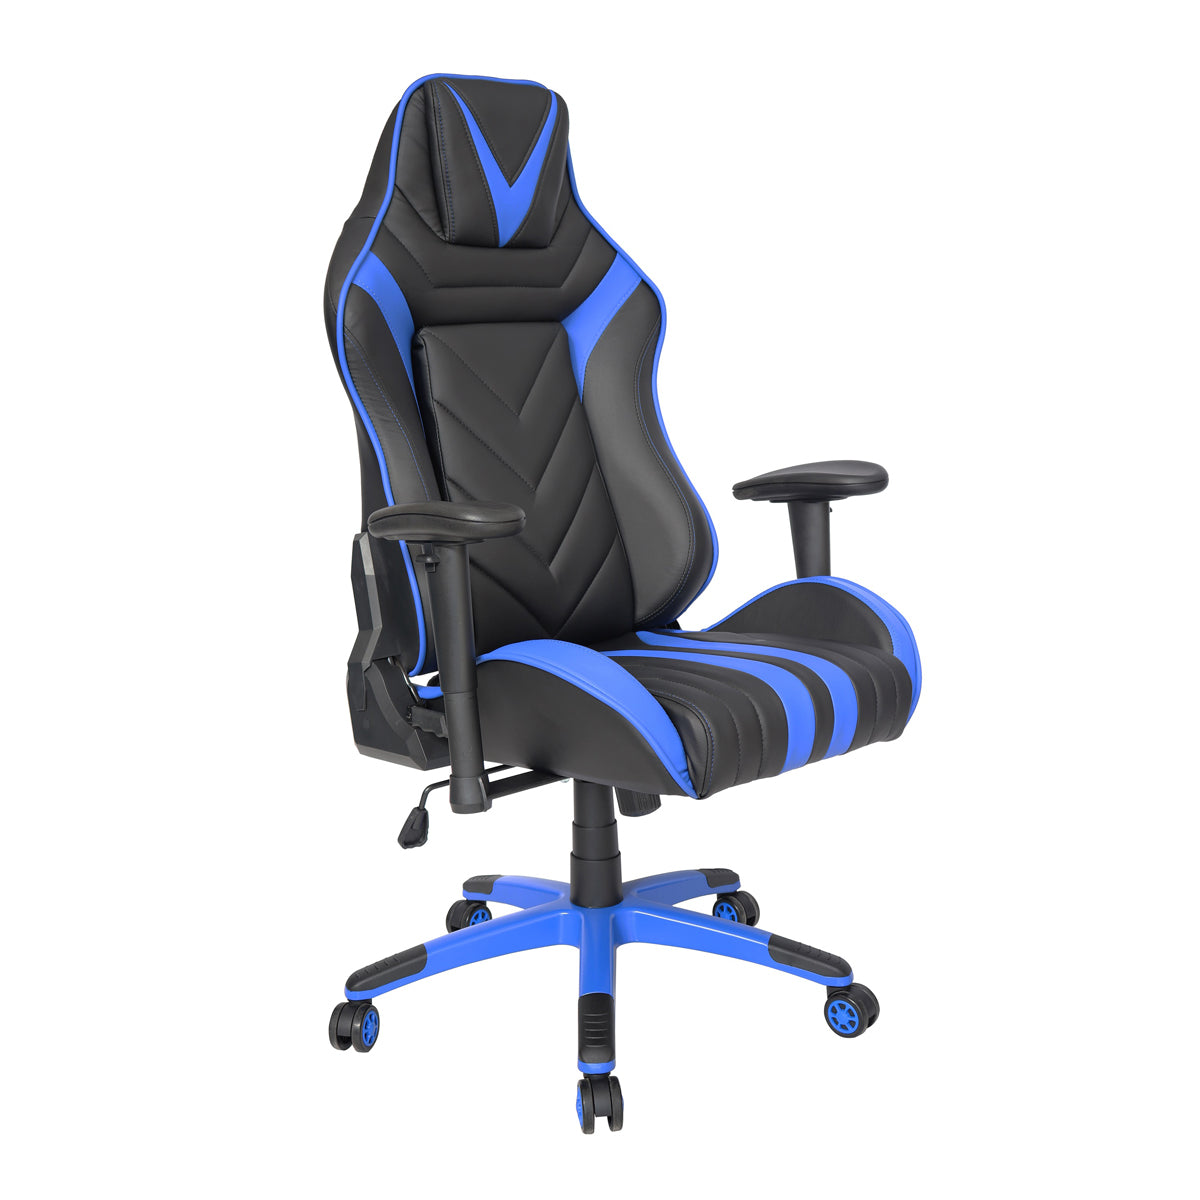 Sillón Gamer-001 respaldo y asiento tapizado en leather azul con base nylon